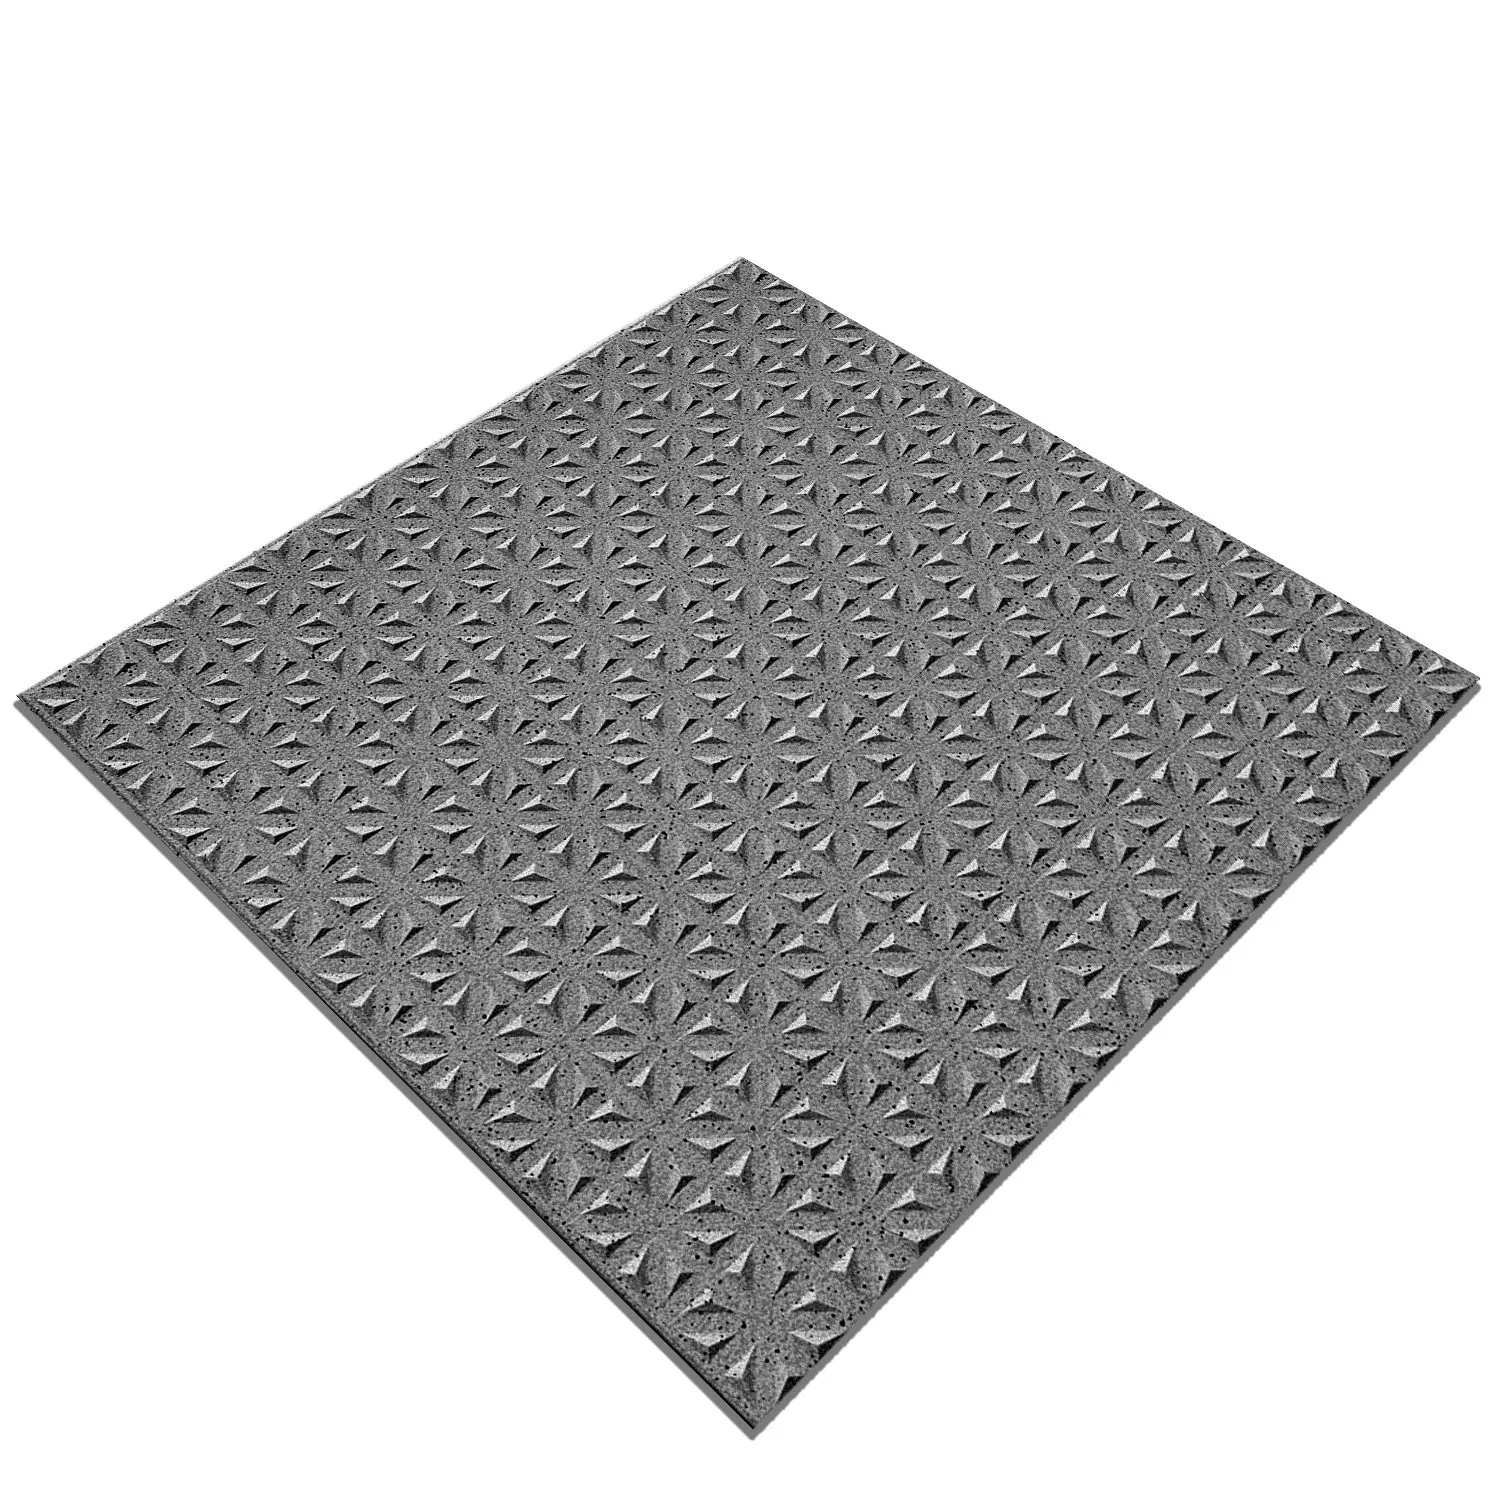 Πρότυπο Πλακάκι Δαπέδου Ψιλό Σιτάρι R12/V4 Ανθρακίτης Διάστικτος 20x20cm